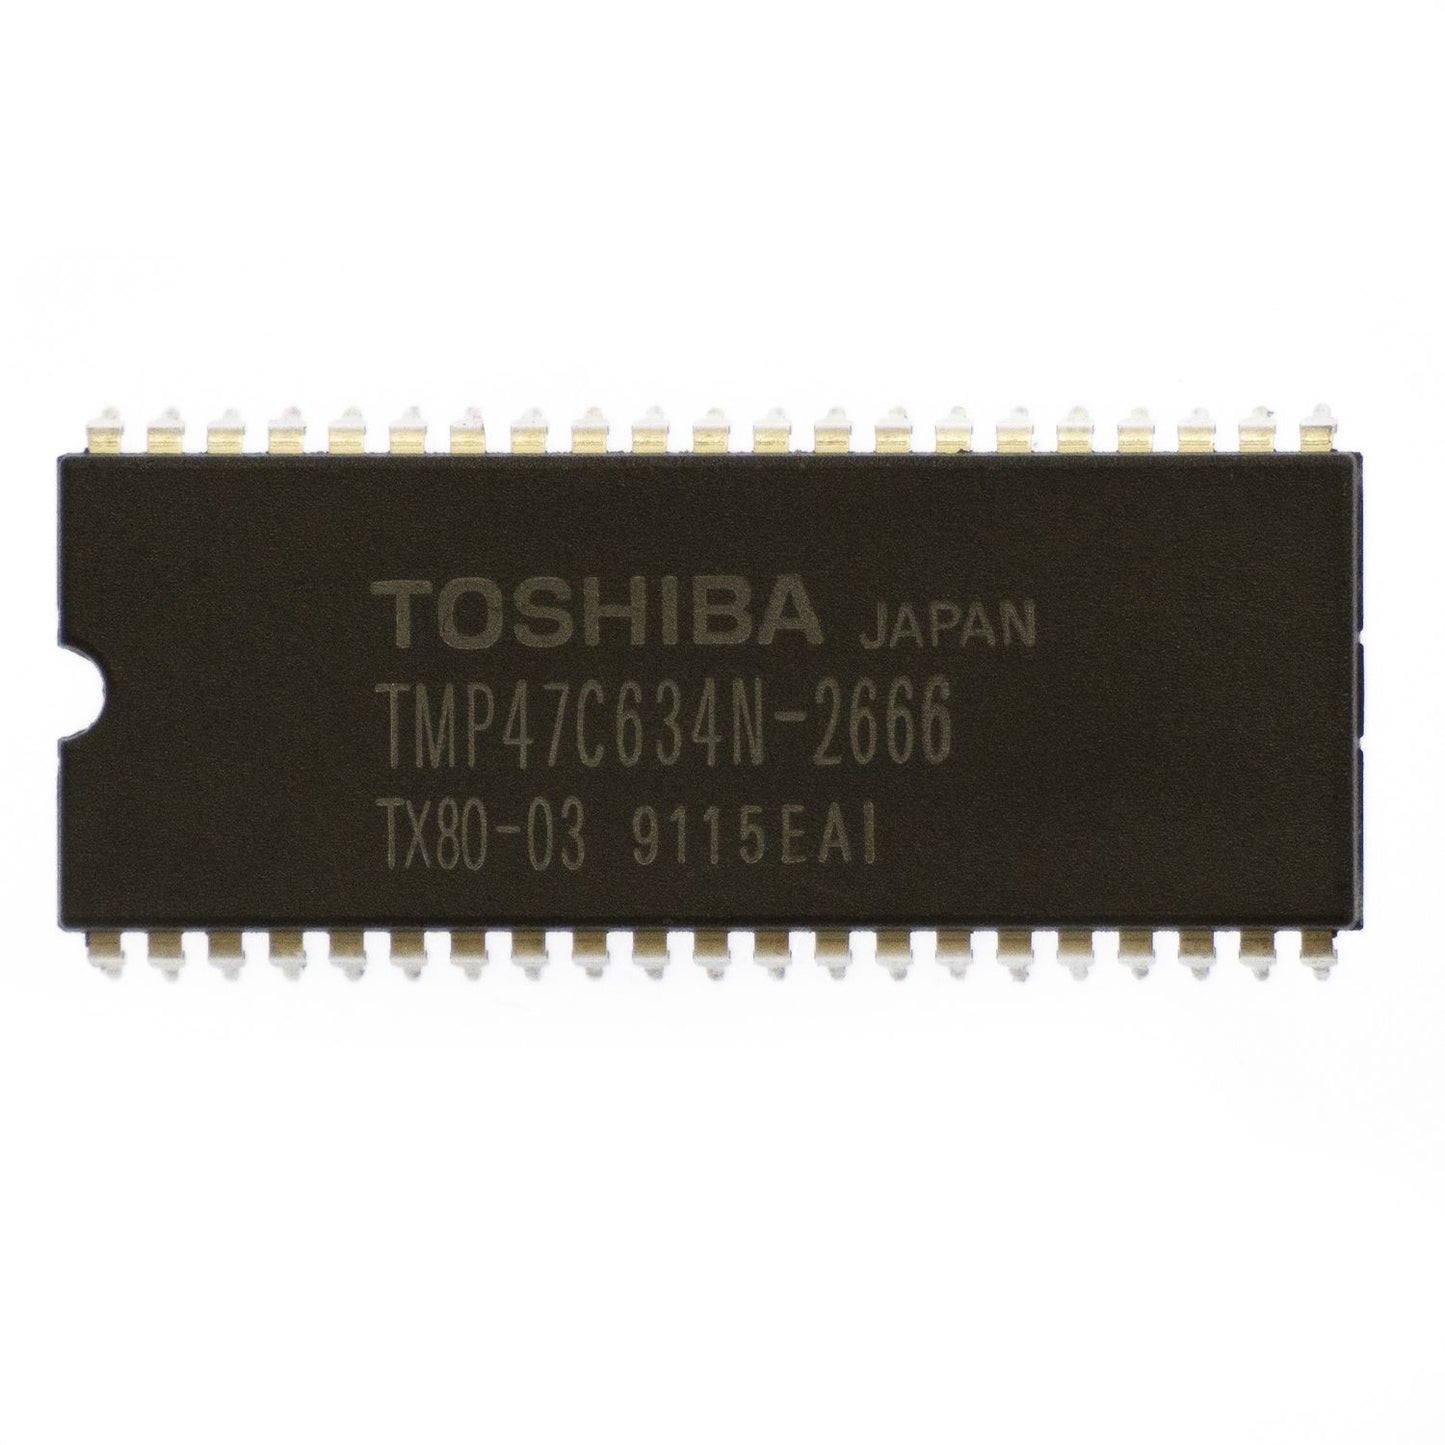 Toshiba TMP47C634N-2666 circuito integrato, transistor, componente elettronico, 42 contatti